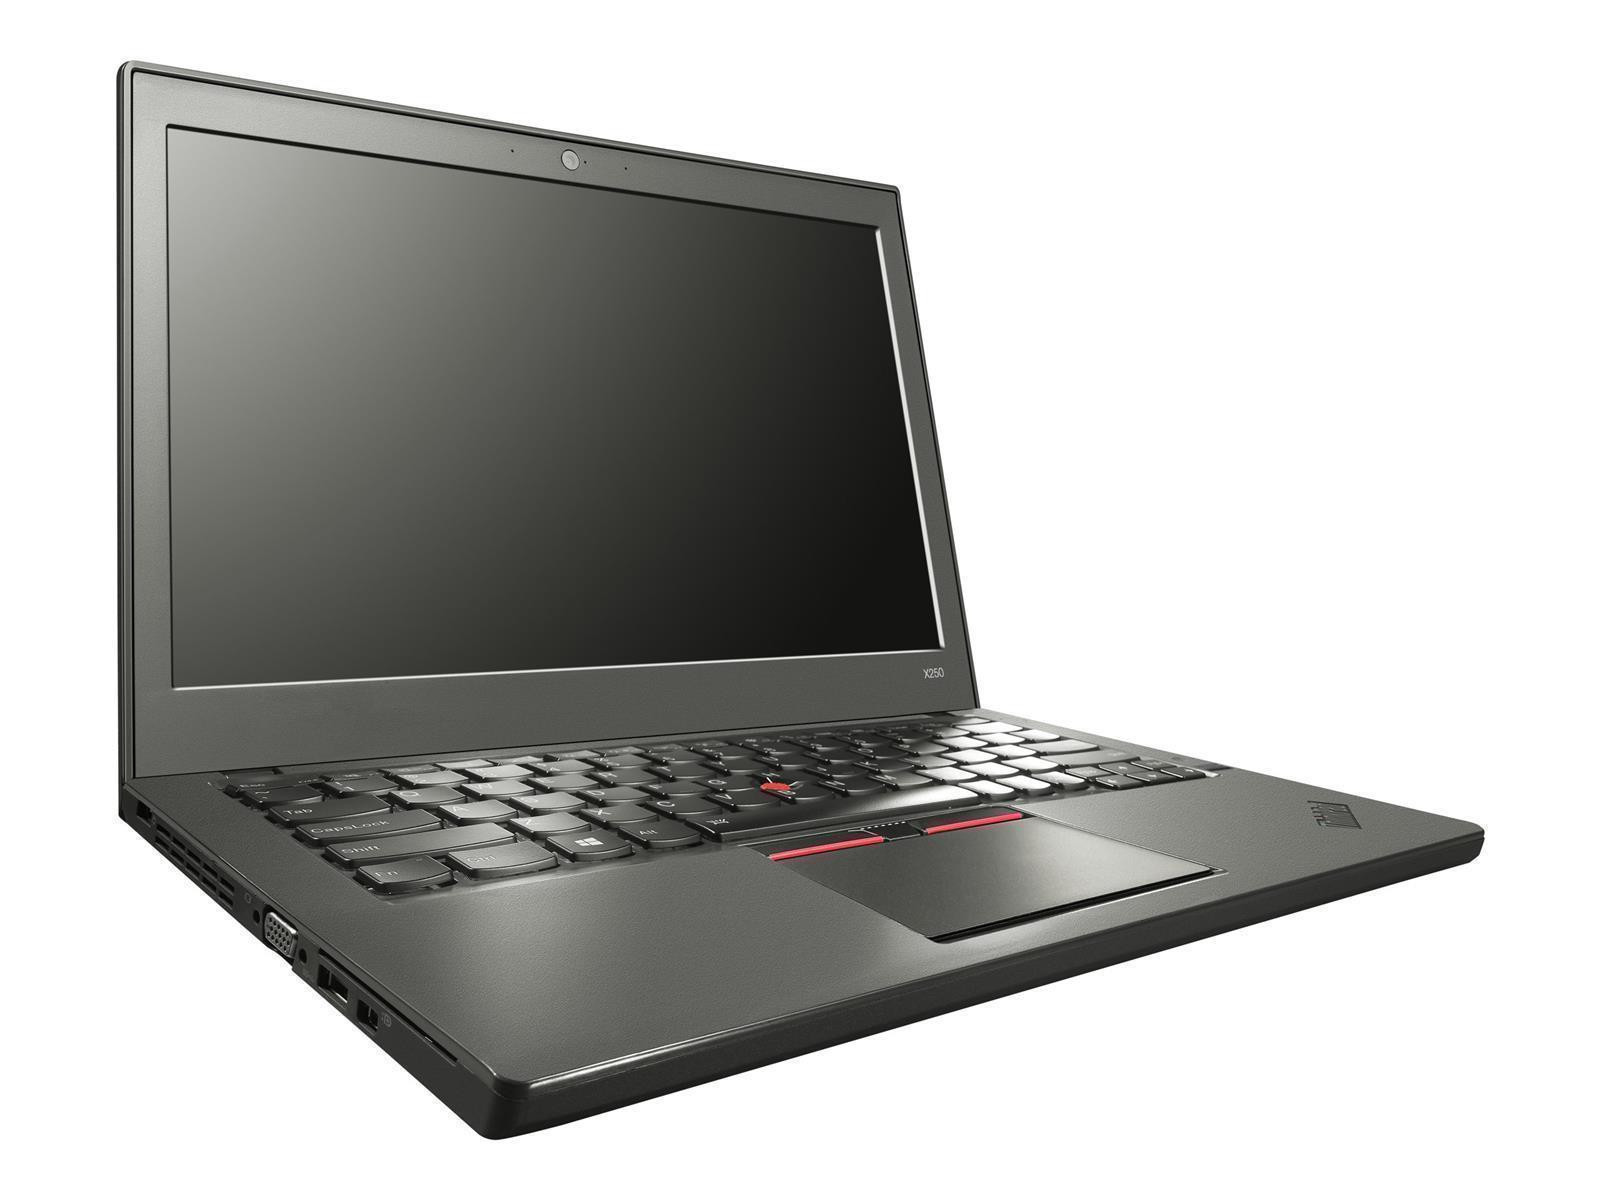 Lenovo ThinkPad X250 Laptop Intel Core i5-5200U 8GB RAM 256GB SSD WWAN Win 10 Pro DE